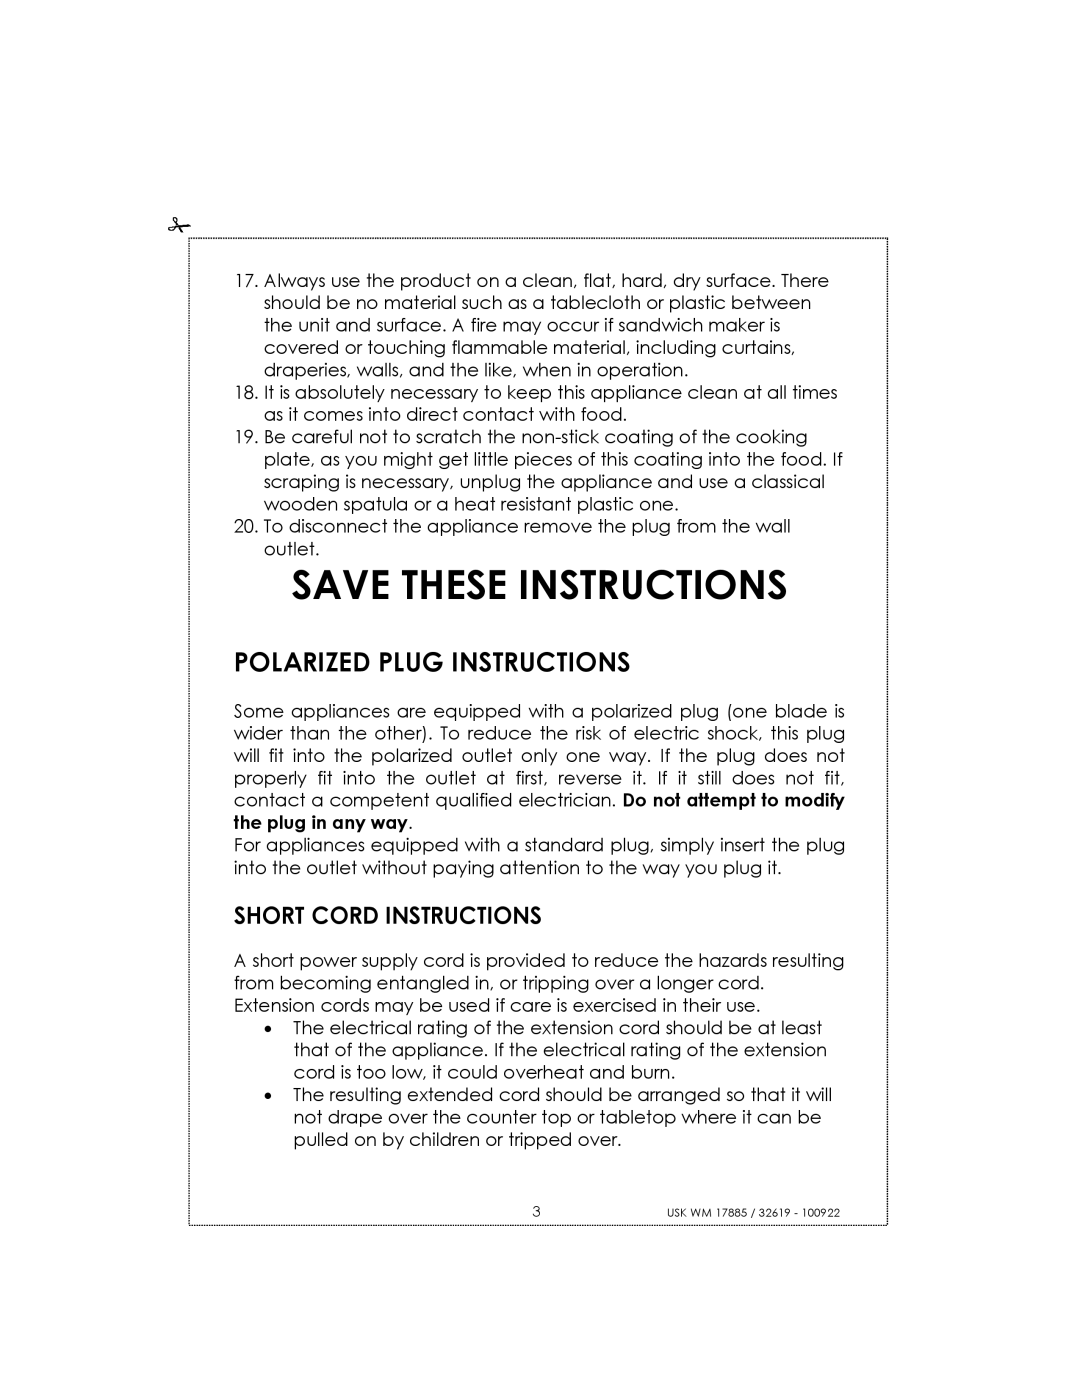 Kalorik usk wm 17885, usk wm 32619 manual Save These Instructions, Polarized Plug Instructions, Short Cord Instructions 